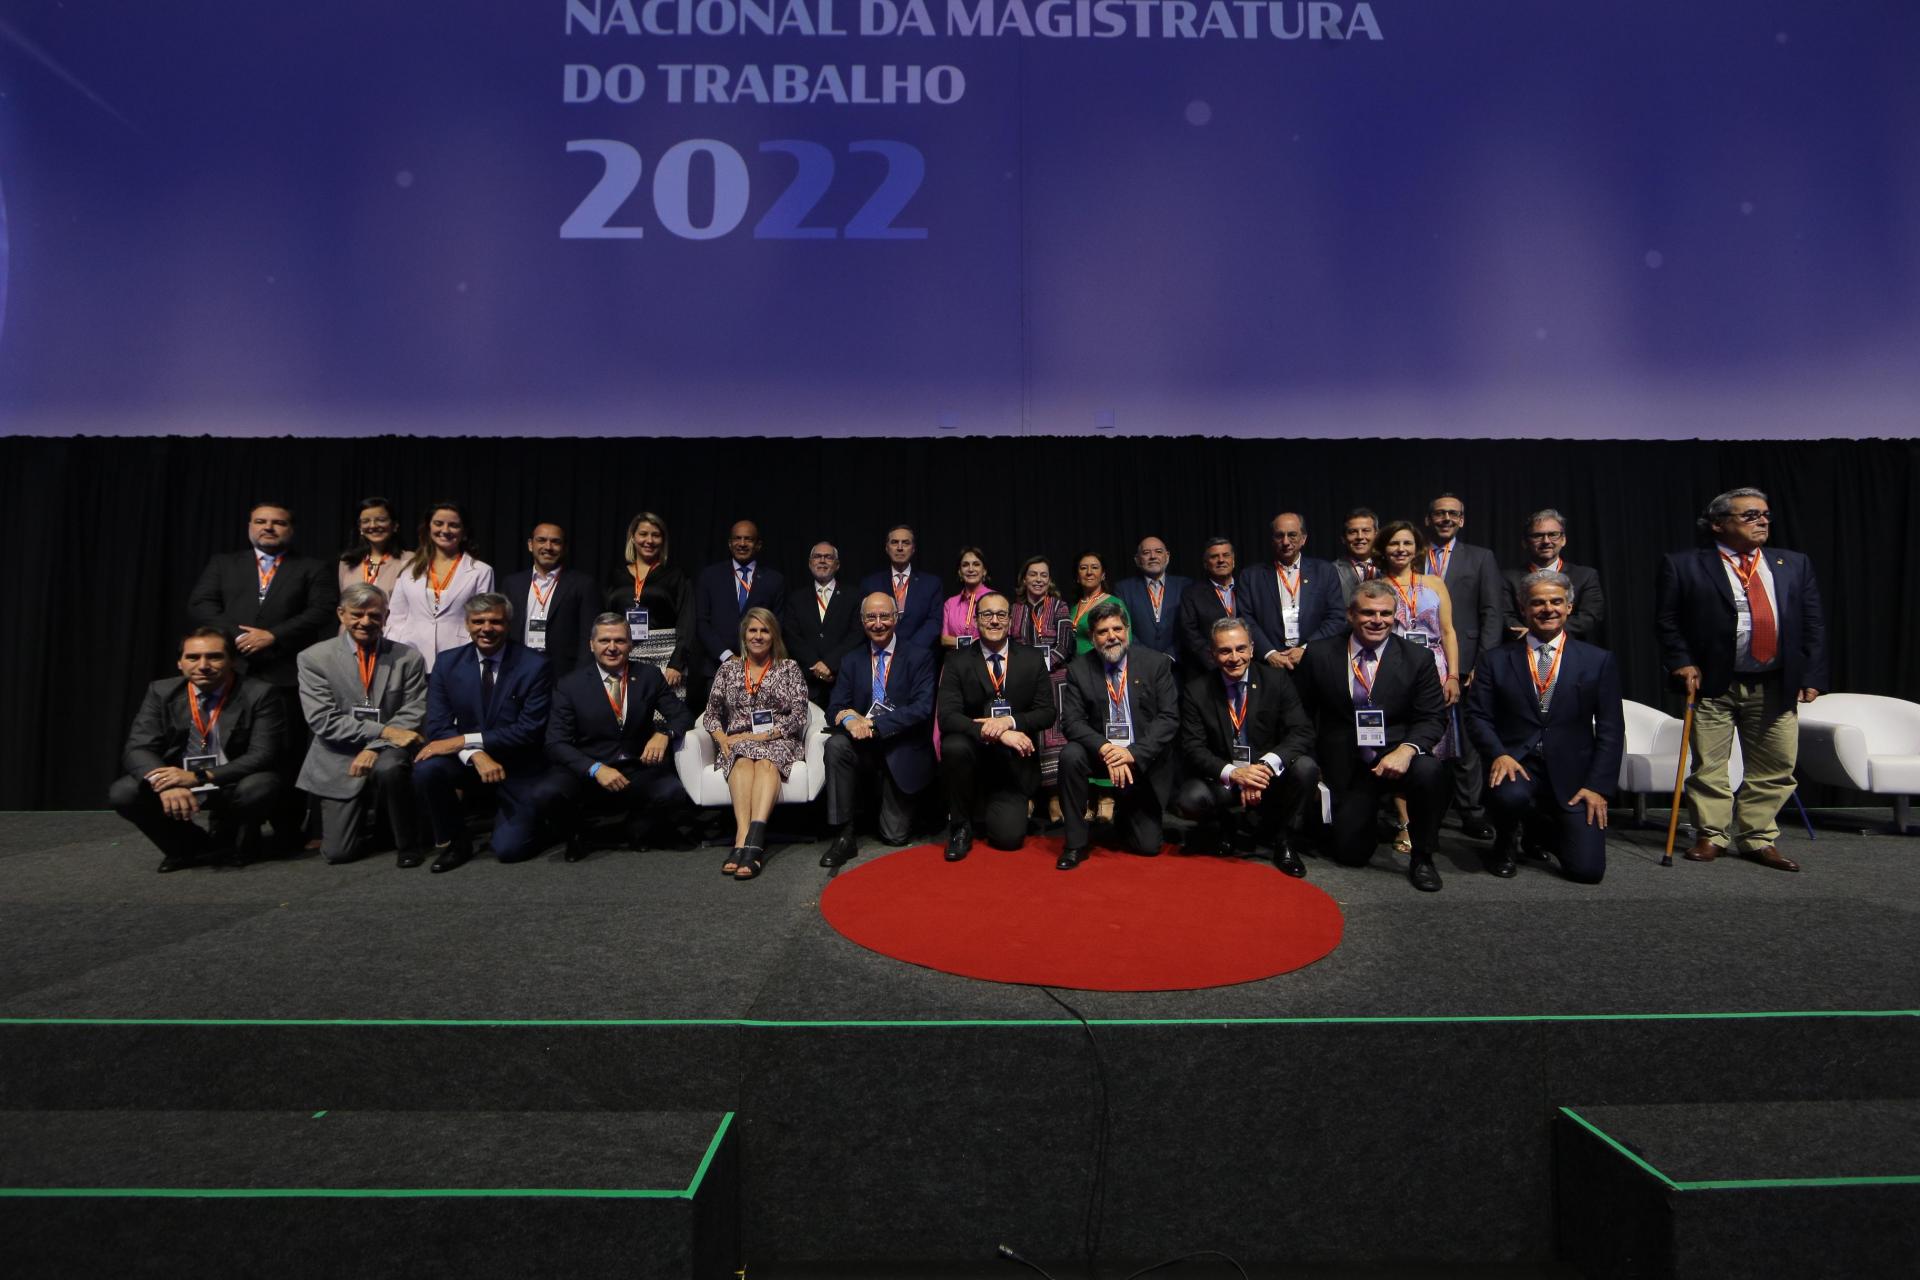 O EVENTO Magistratura do trabalho reúne entidades patronais e de trabalhadores em ampla discussão sobre o futuro das relações do trabalho no Brasil